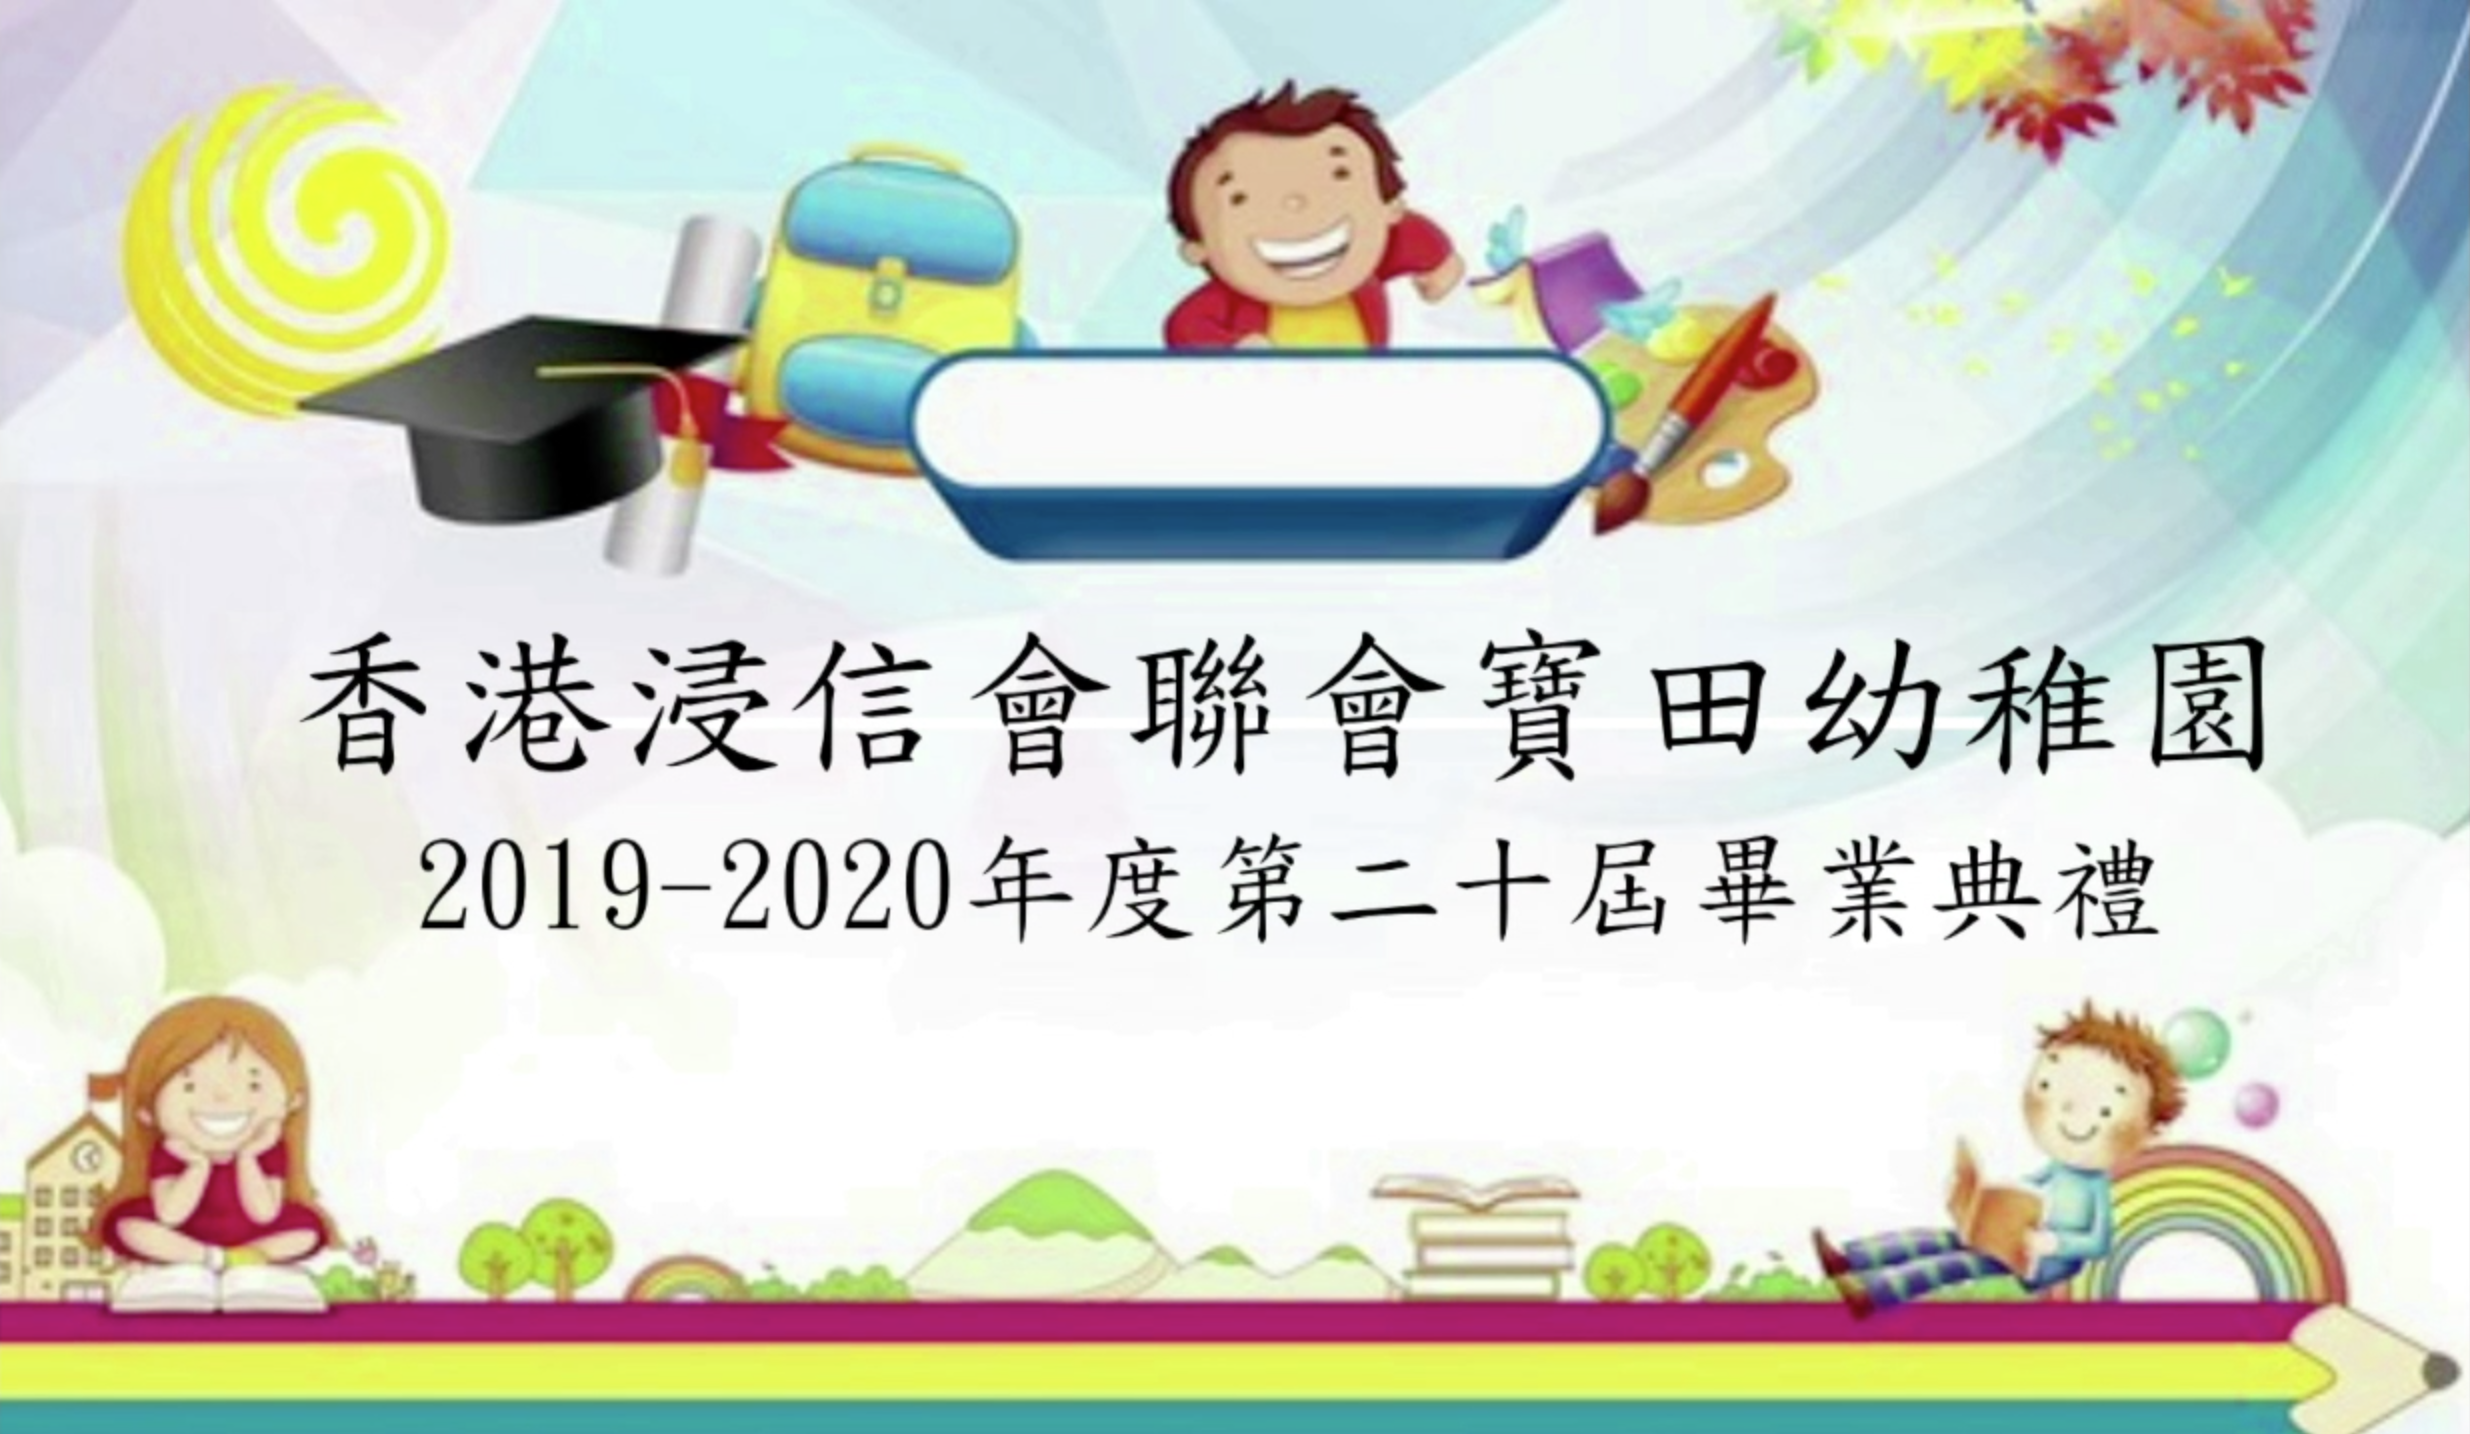 2019-2020 畢業生生活片段